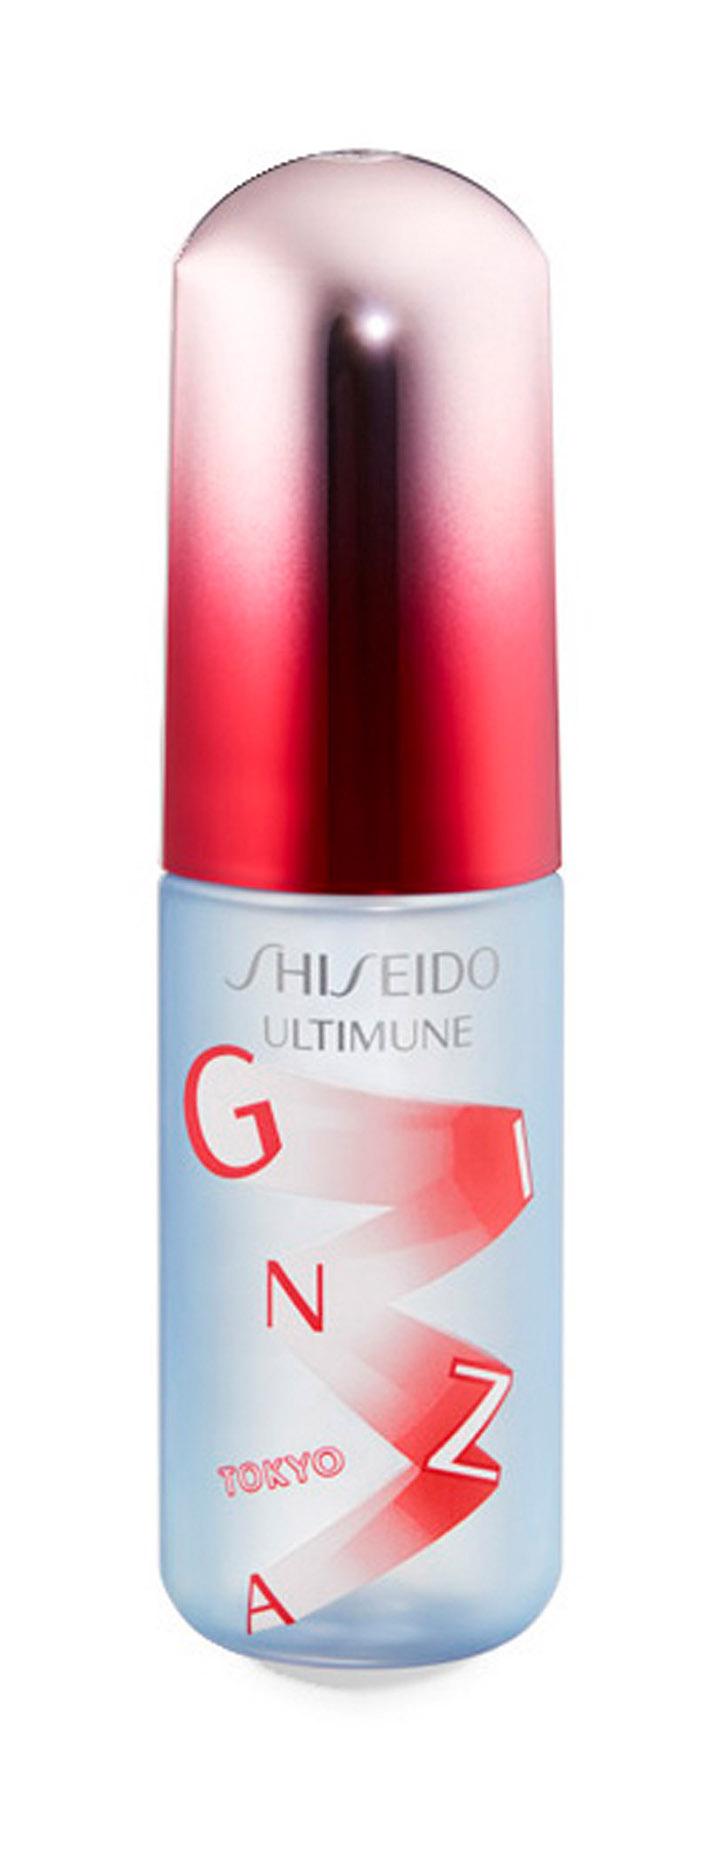 Освежающий мист для лица Shiseido Ultimune Defense Refresh Mist Duo защитный, 60 мл laundryou мист для лица успокаивающий